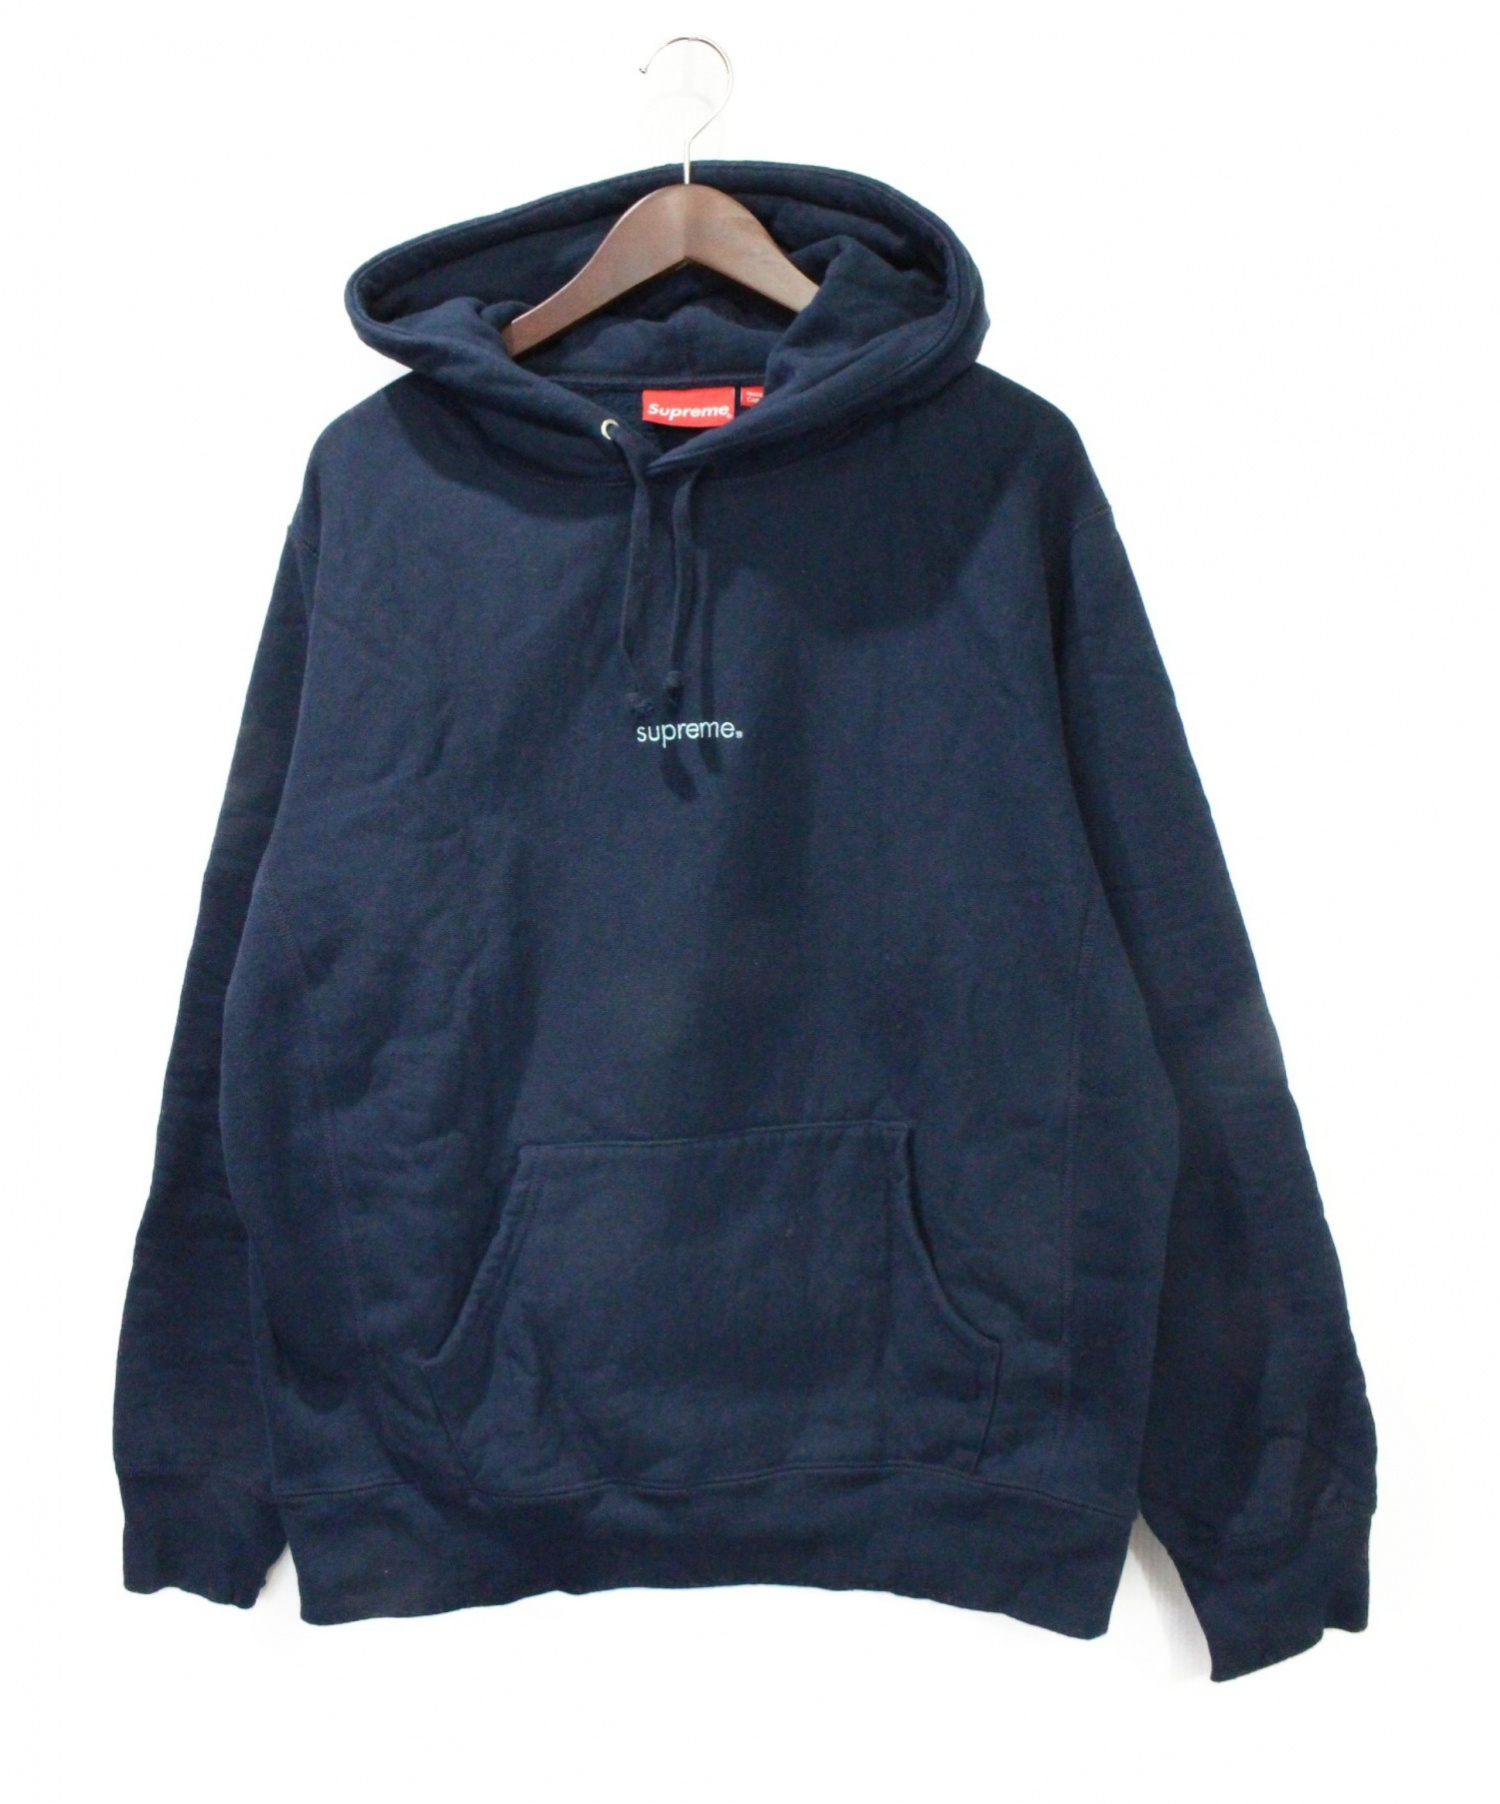 Supreme 18fw trademark hooded sweatshirt美品です